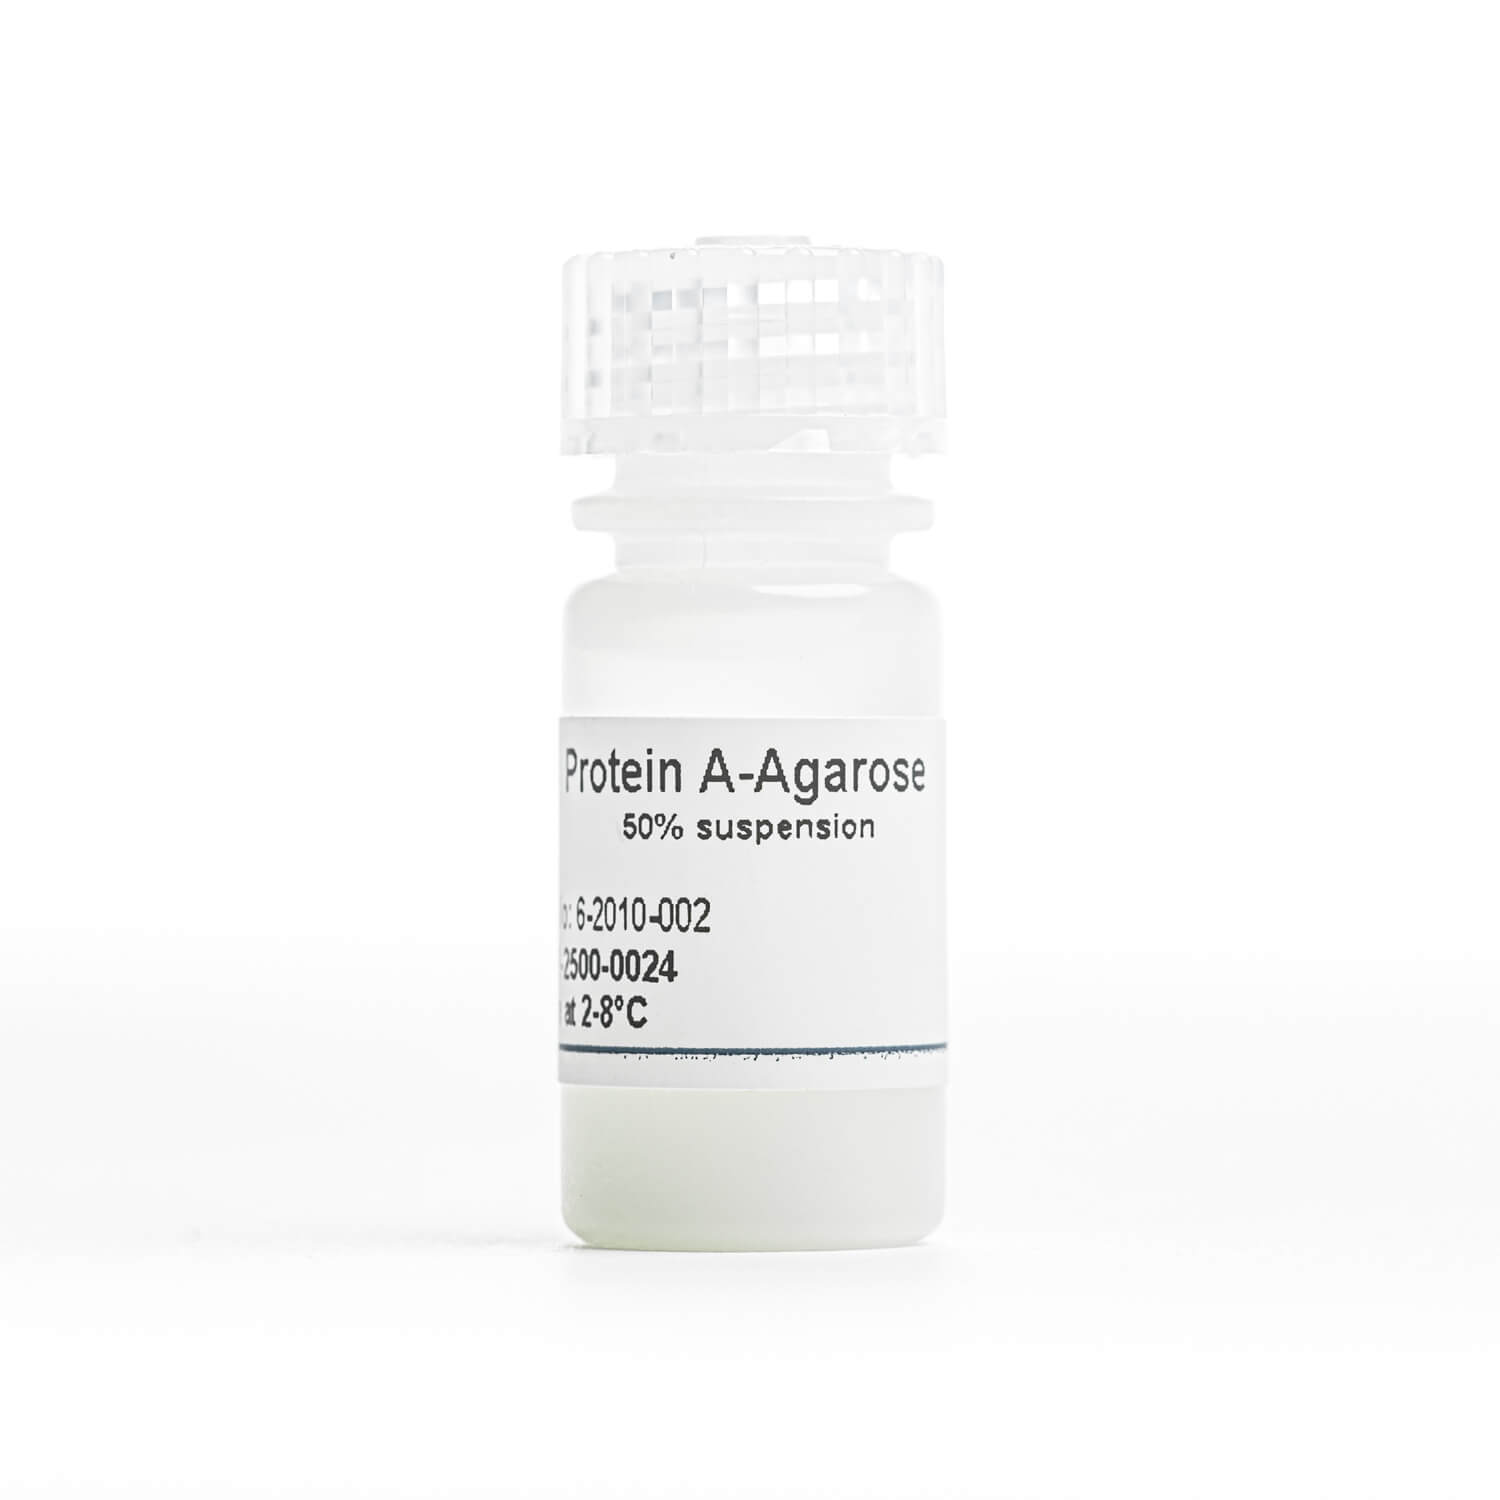 Protein A Agarose resin